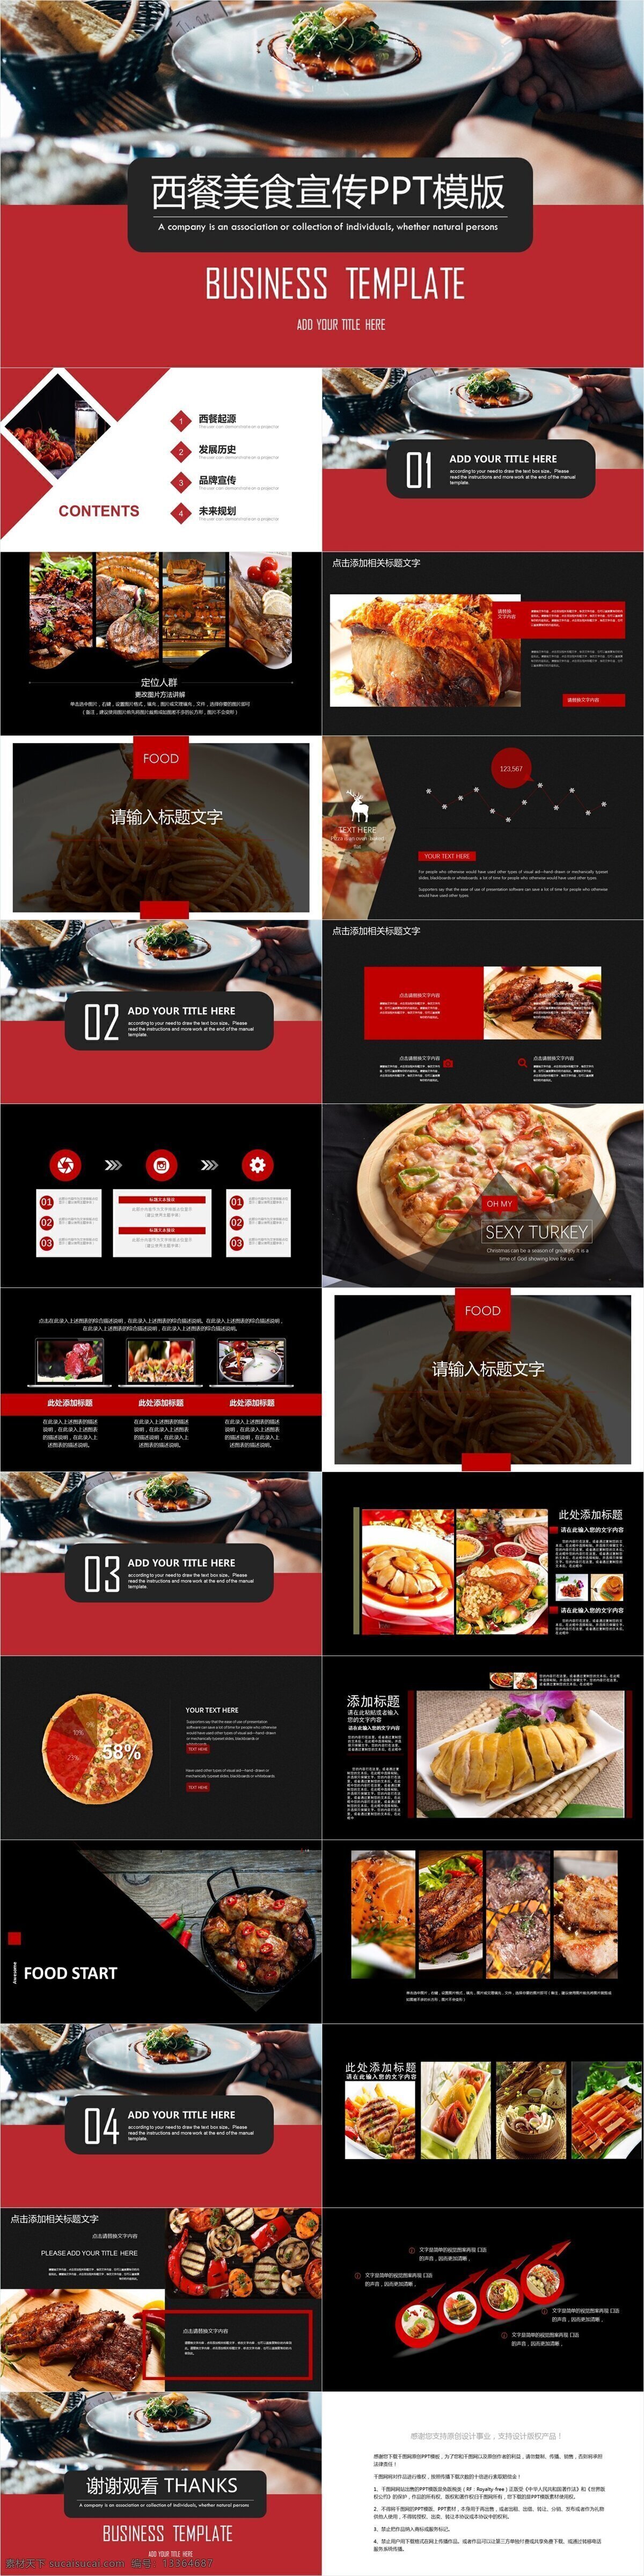 简约 西餐 美食 宣传 模板 创意 企业宣传 企业简介 西餐美食 产品介绍 商务合作 策划